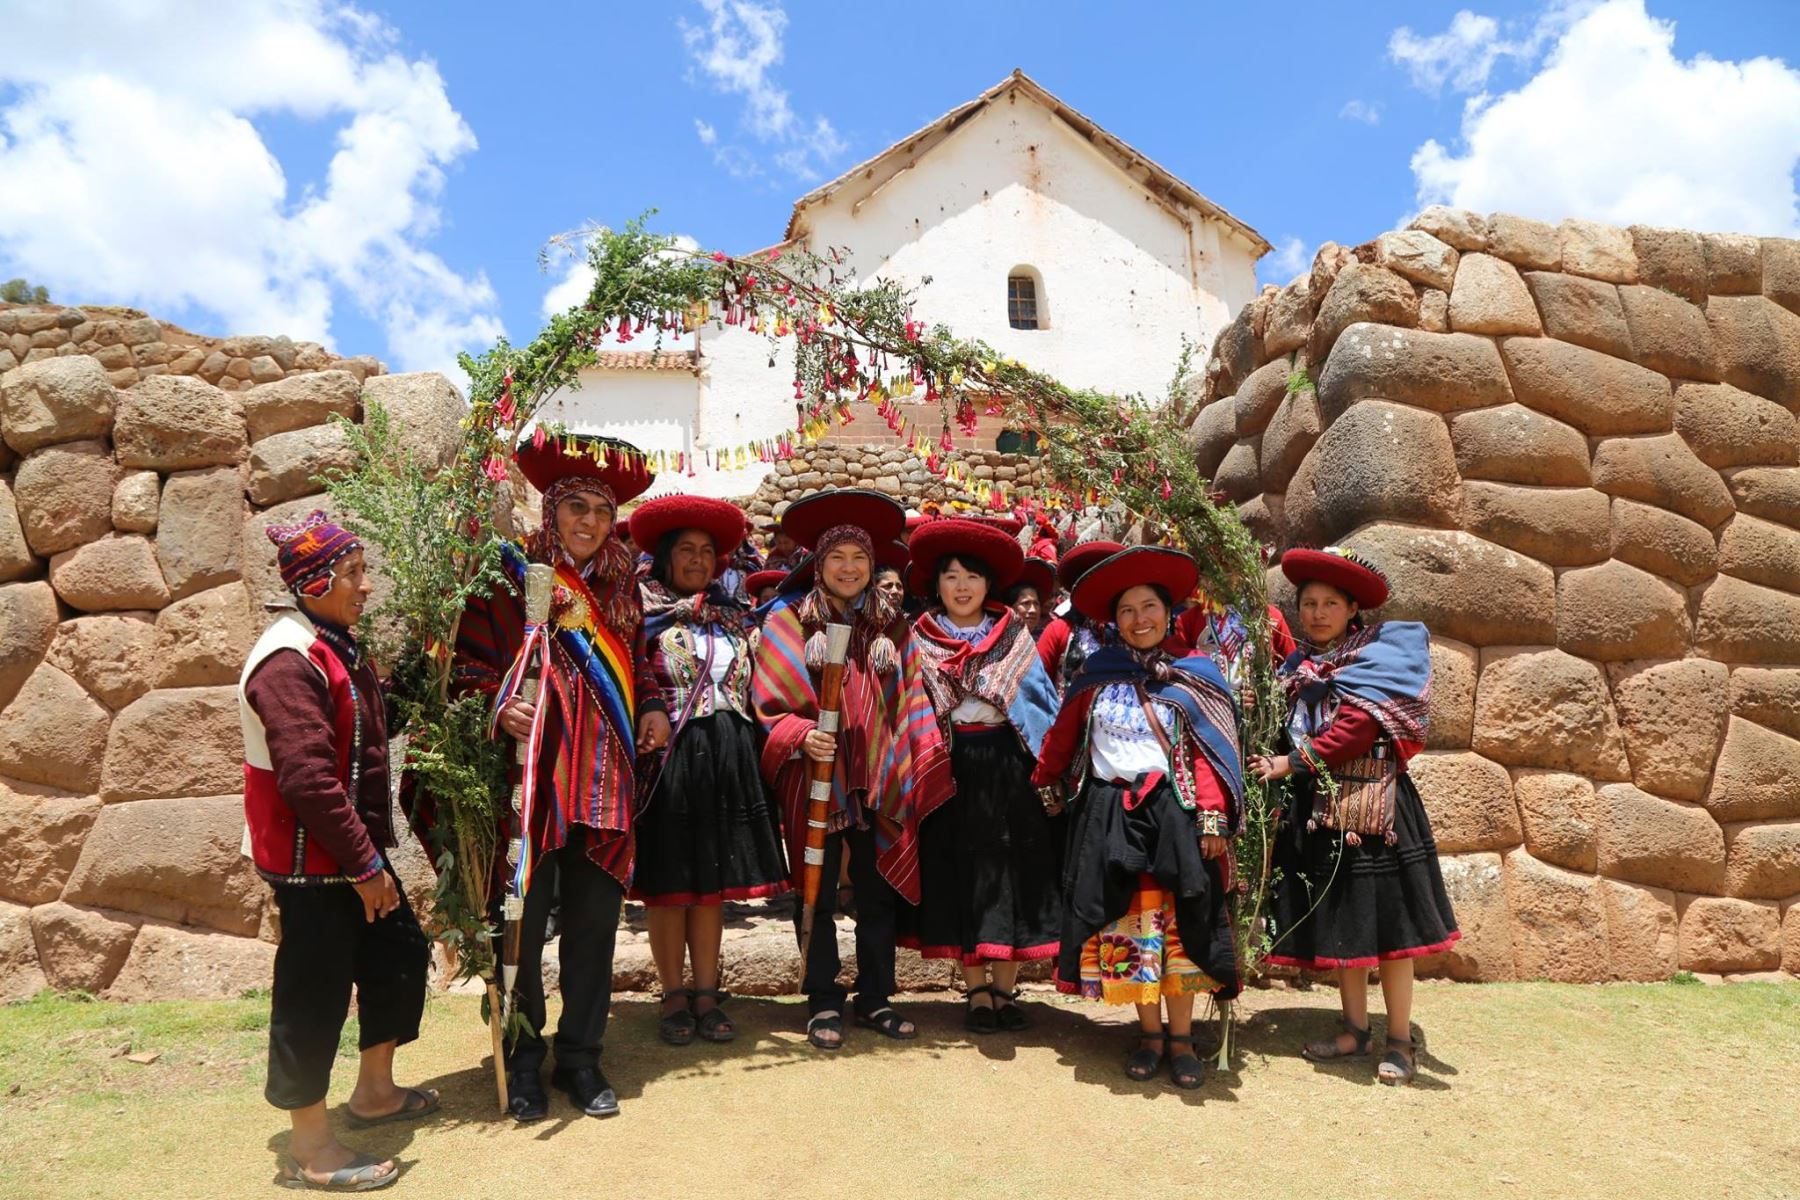 Con ceremonia andina pareja japonesa contrae matrimonio en Cusco. Foto: municipalidad de Chinchero.